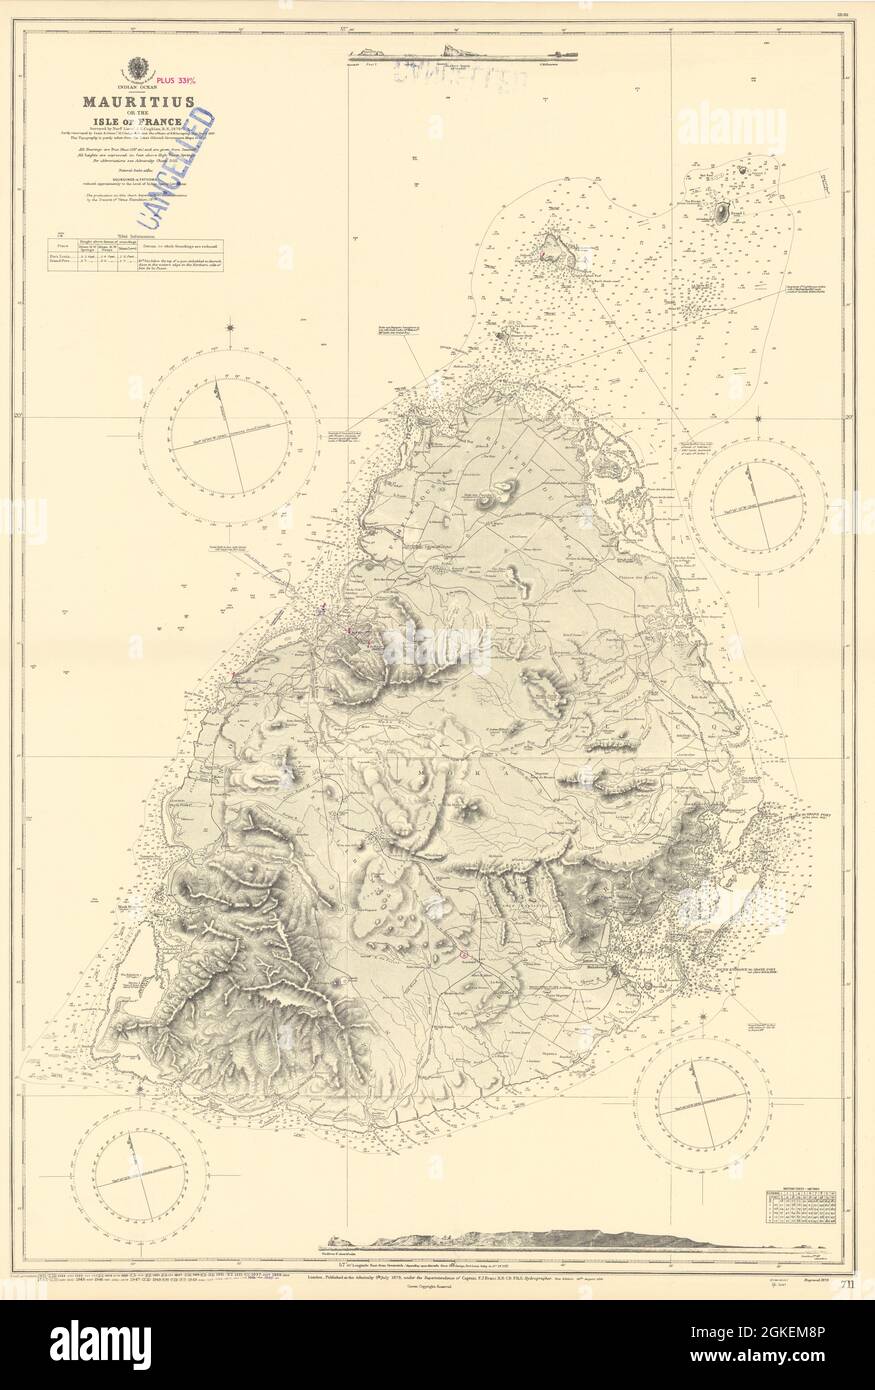 Mauritius oder Insel Frankreich, Indischer Ozean. ADMIRALTY Seekarte 1879 (1955) Karte Stockfoto